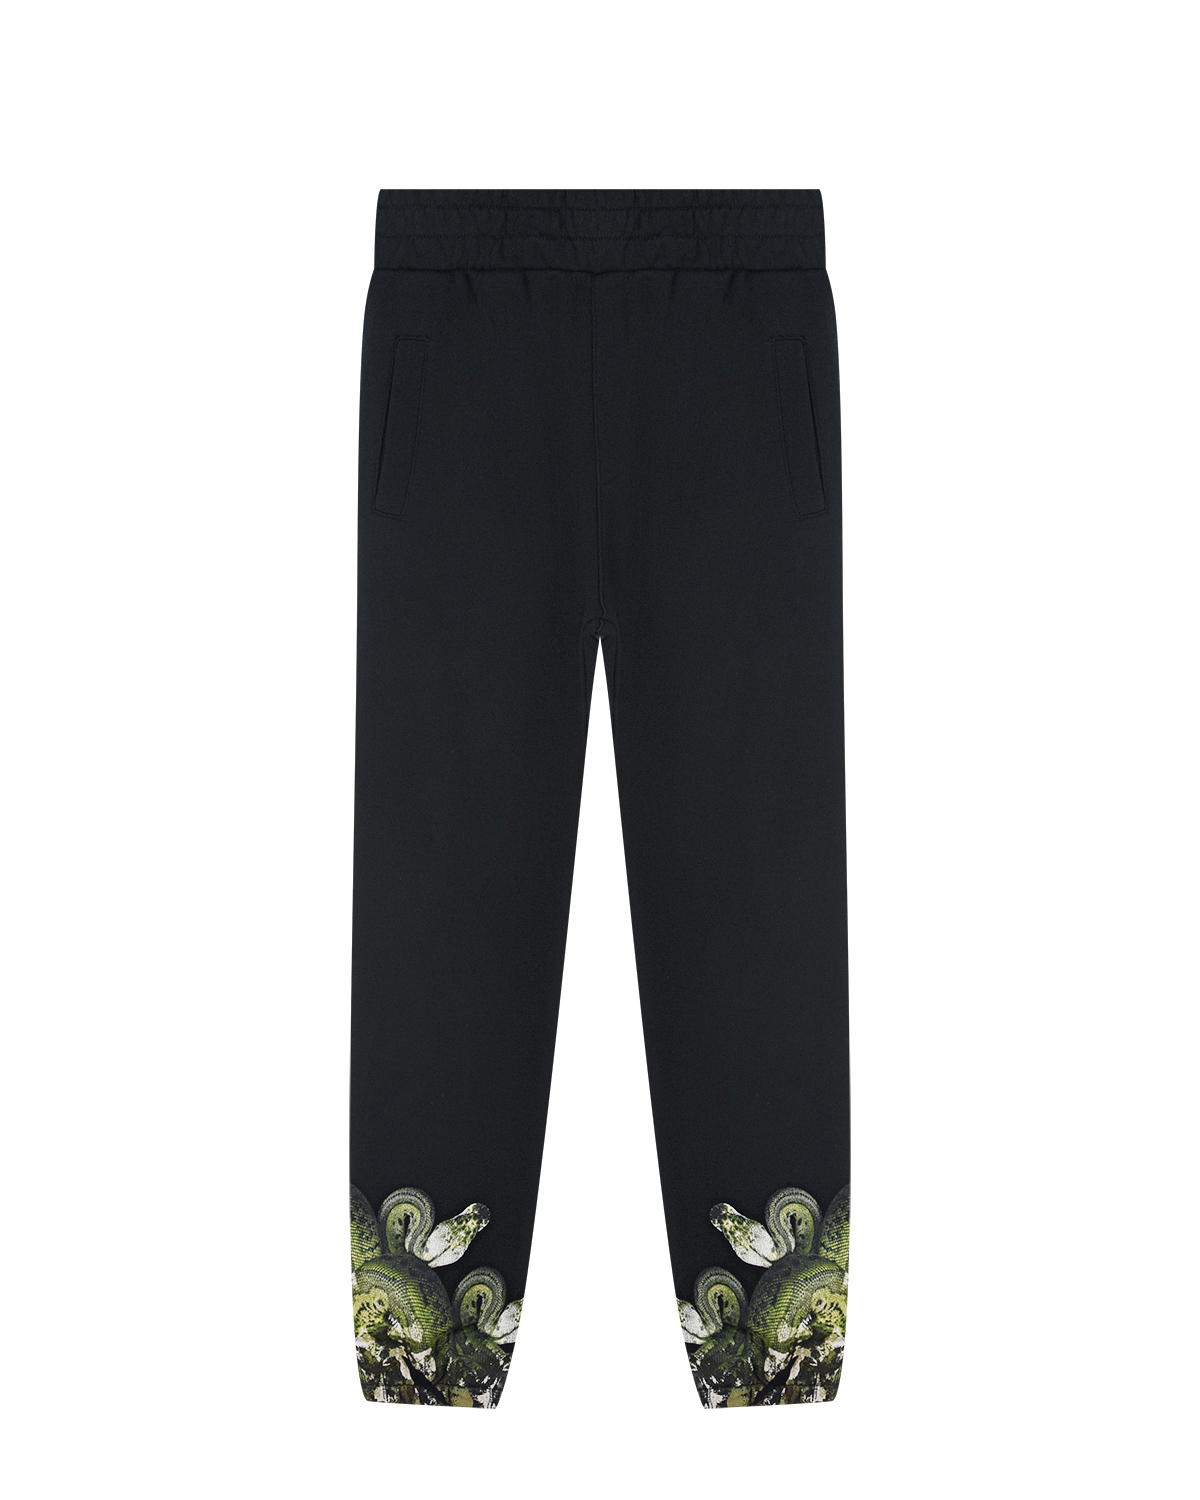 Спортивные брюки с принтом "Удав" Marcelo Burlon детские, размер 128, цвет черный - фото 1